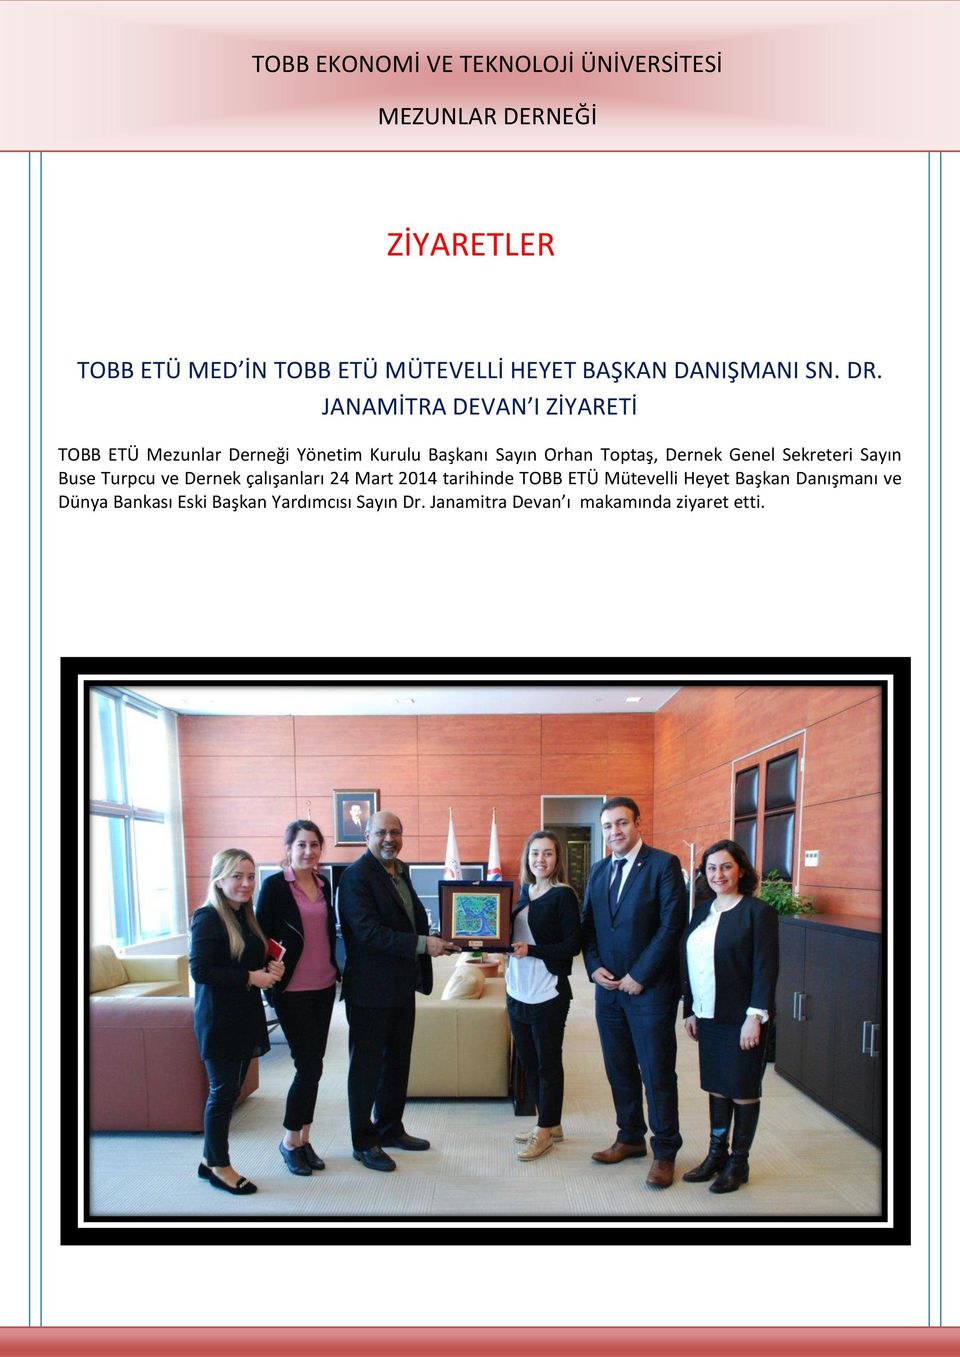 Dernek Genel Sekreteri Sayın Buse Turpcu ve Dernek çalışanları 24 Mart 2014 tarihinde TOBB ETÜ